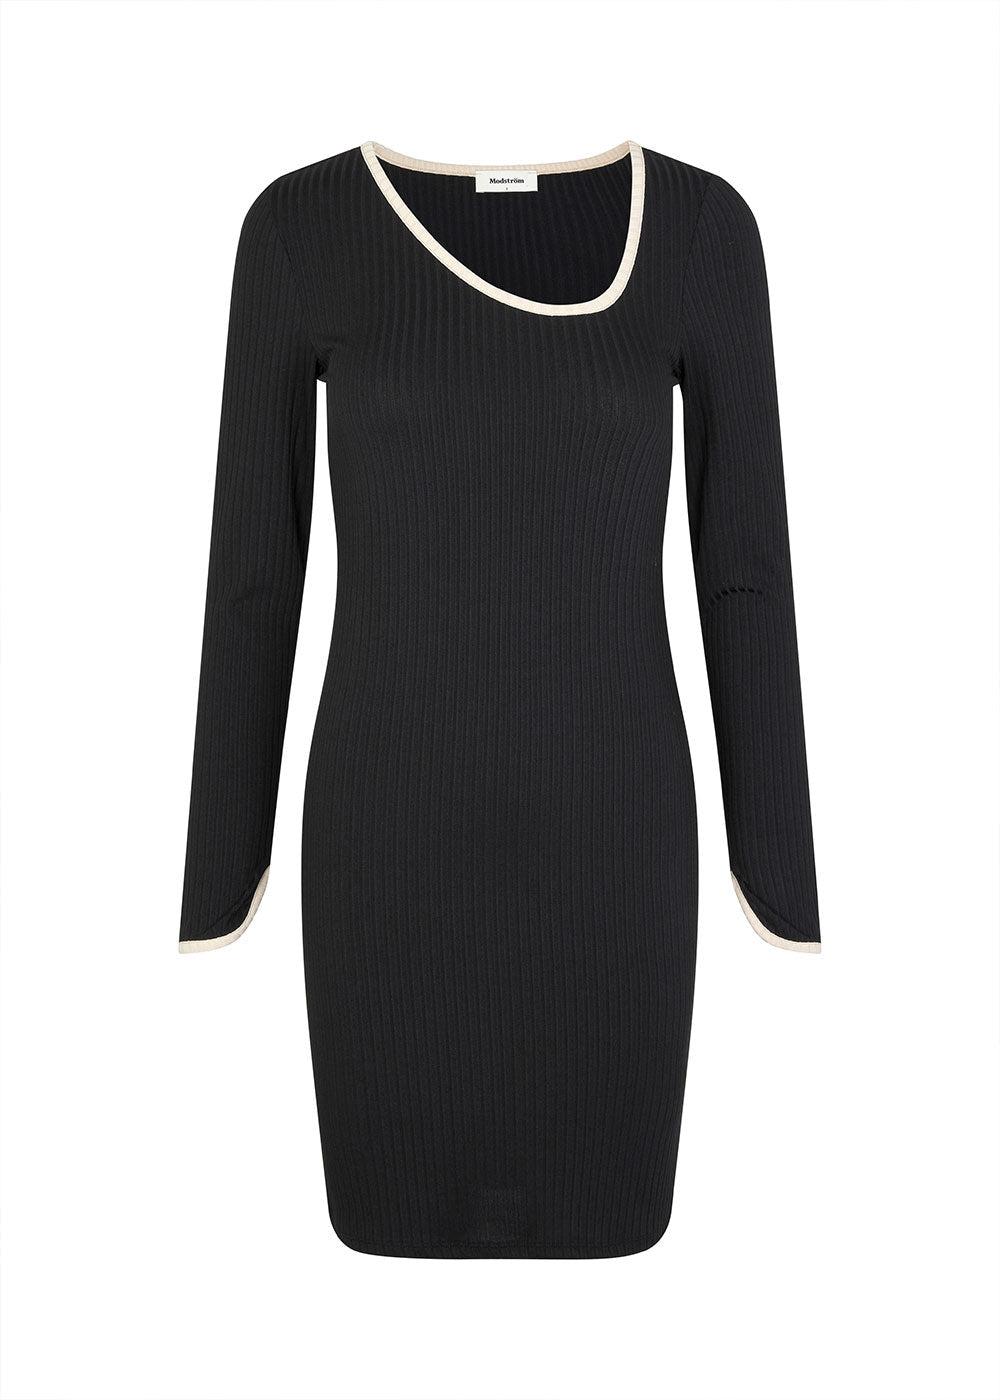 Modströms FaizMD short dress - Black. Køb kjoler her.